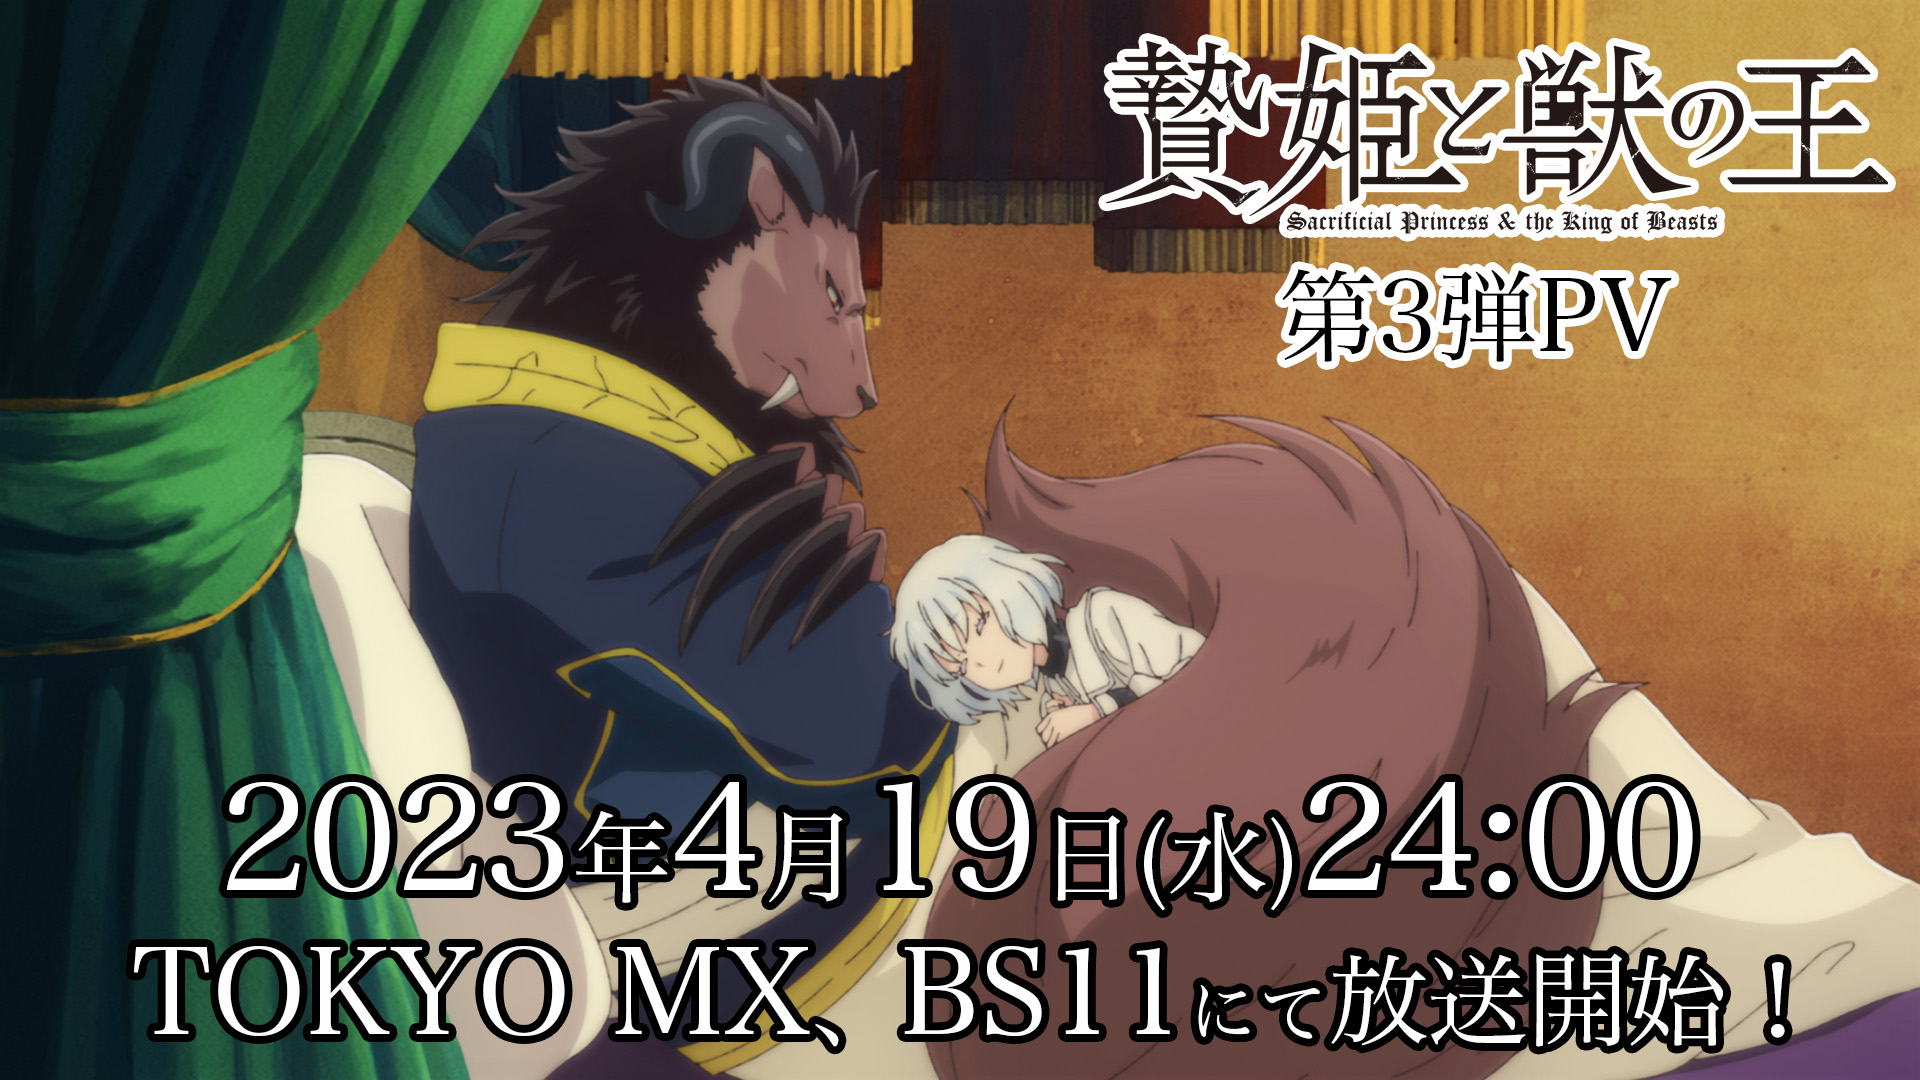 TVアニメ「贄姫と獣の王」第3弾PV！2023年4月19日(水)24:00 TOKYO MX、BS11にて放送開始！